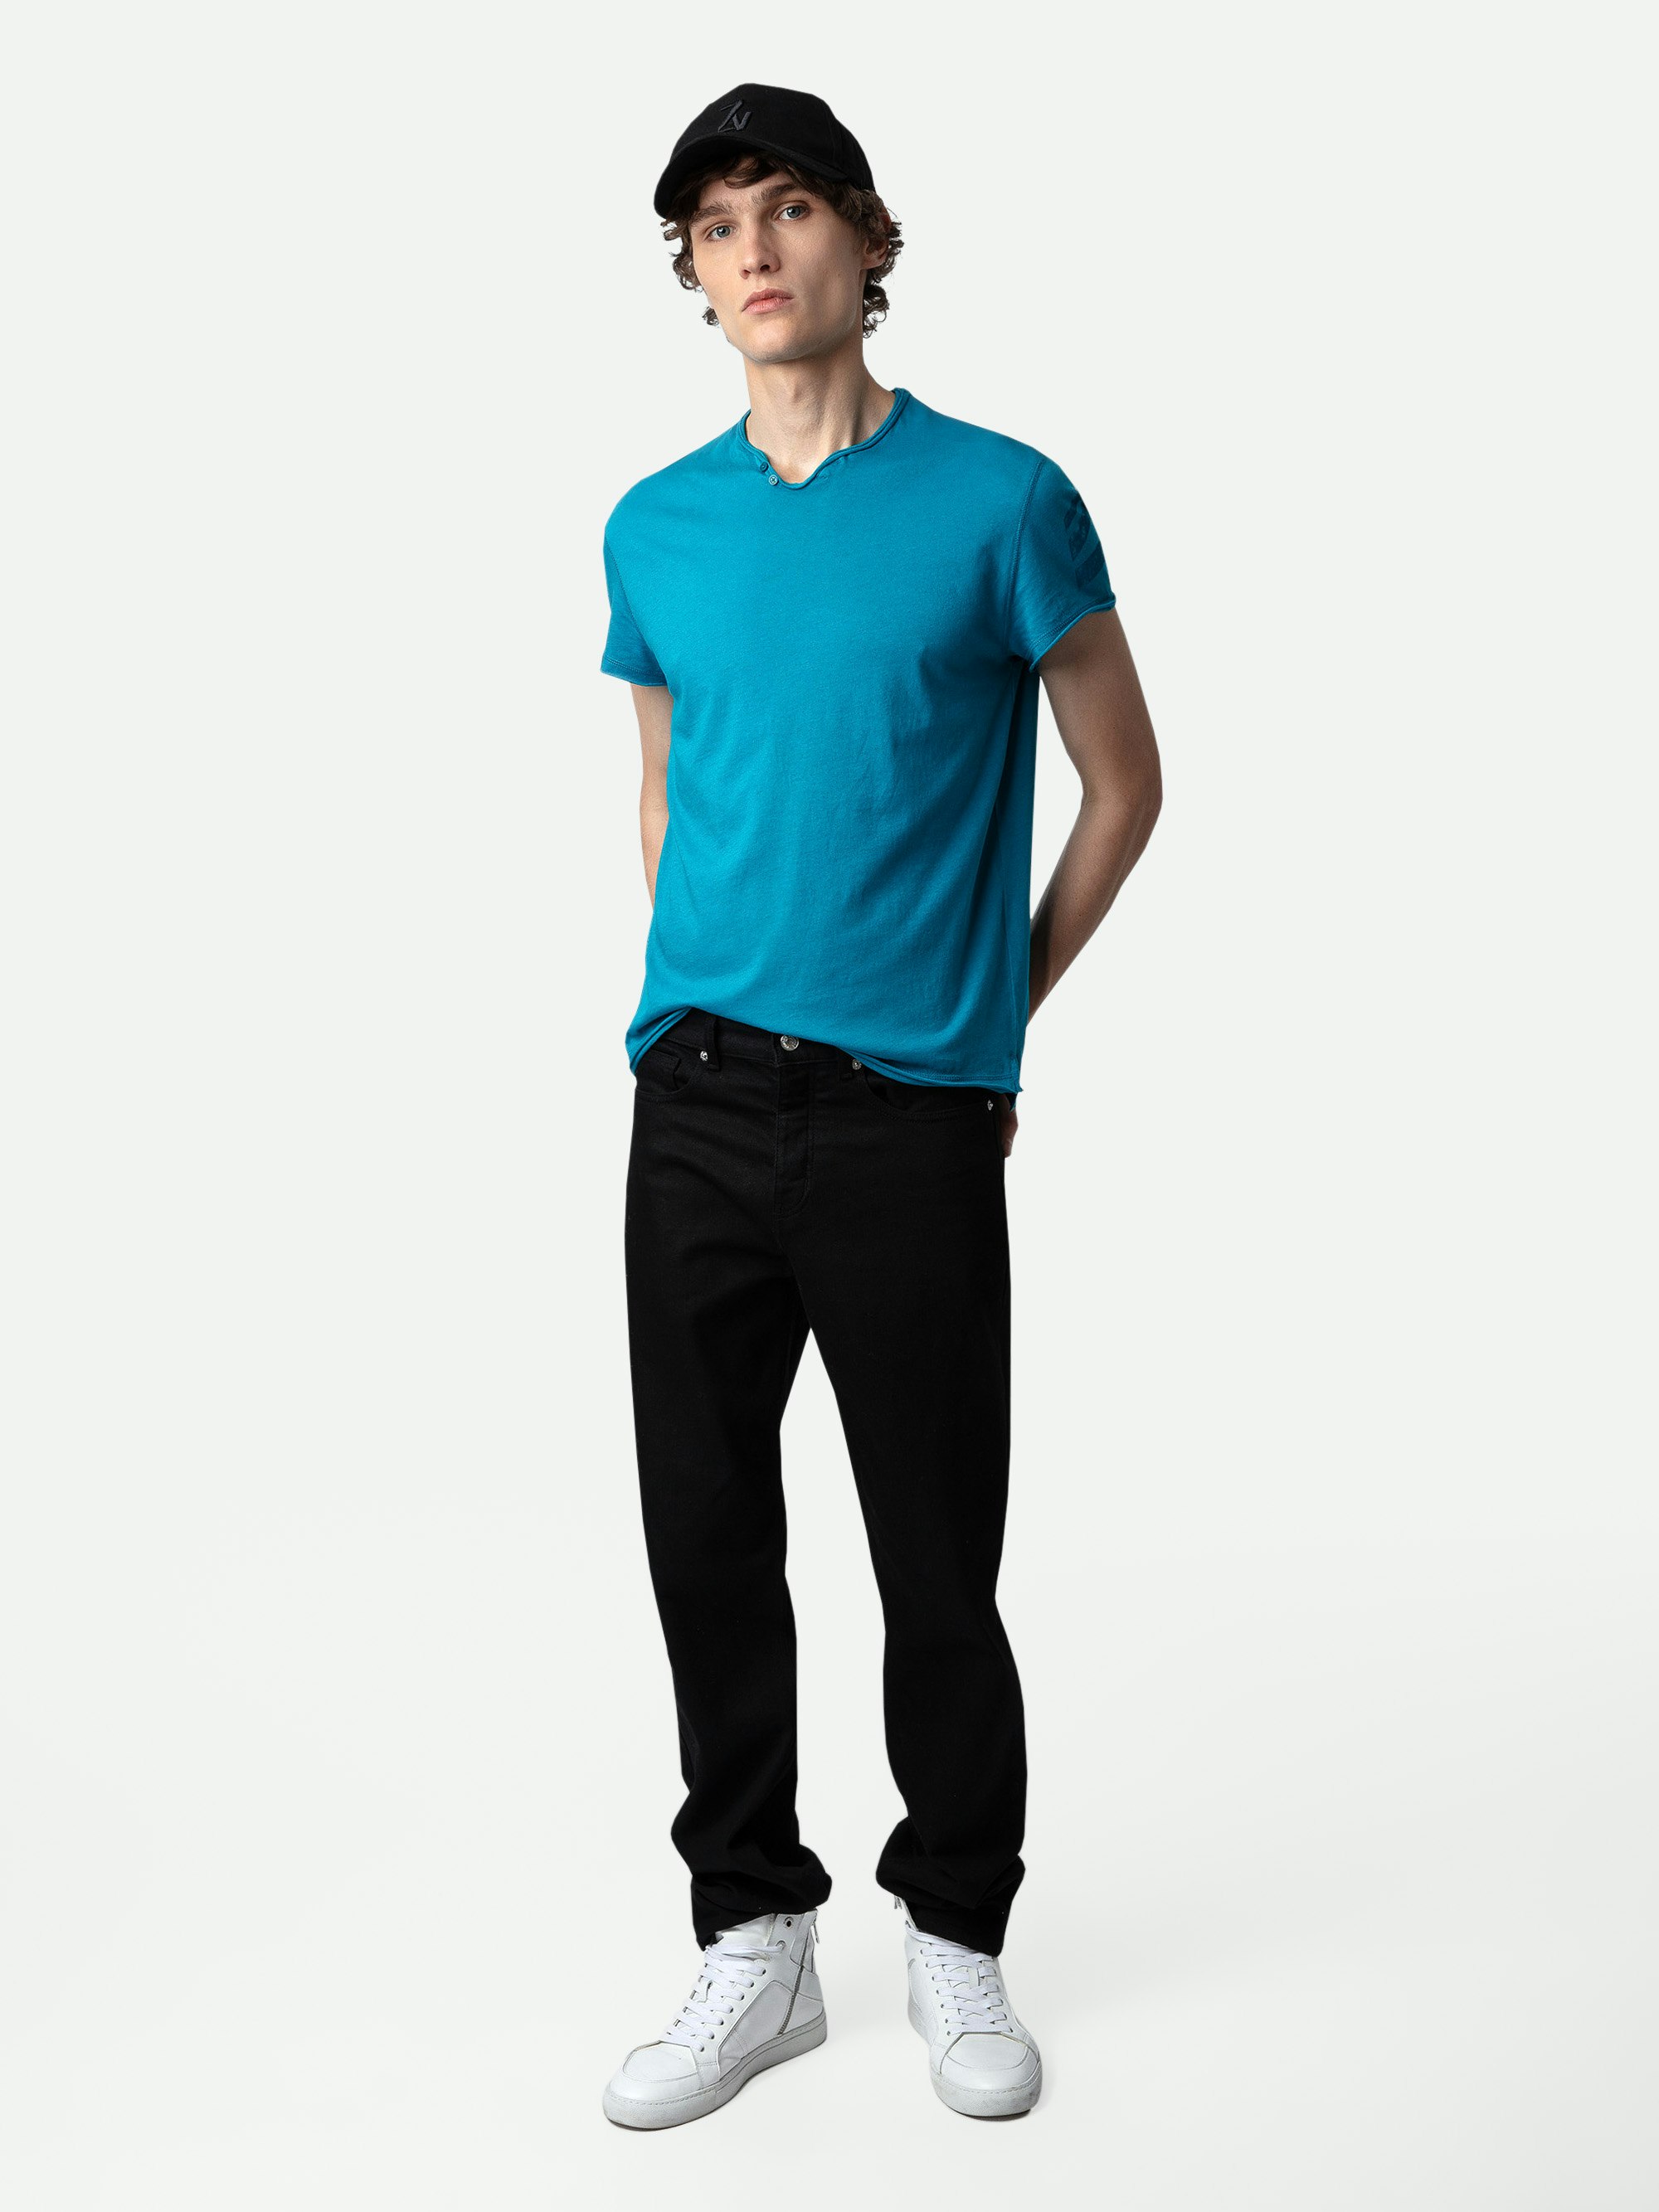 Serafino Monastir Arrow - T-shirt con collo a serafino in cotone turchese con maniche corte e frecce sulla manica sinistra.